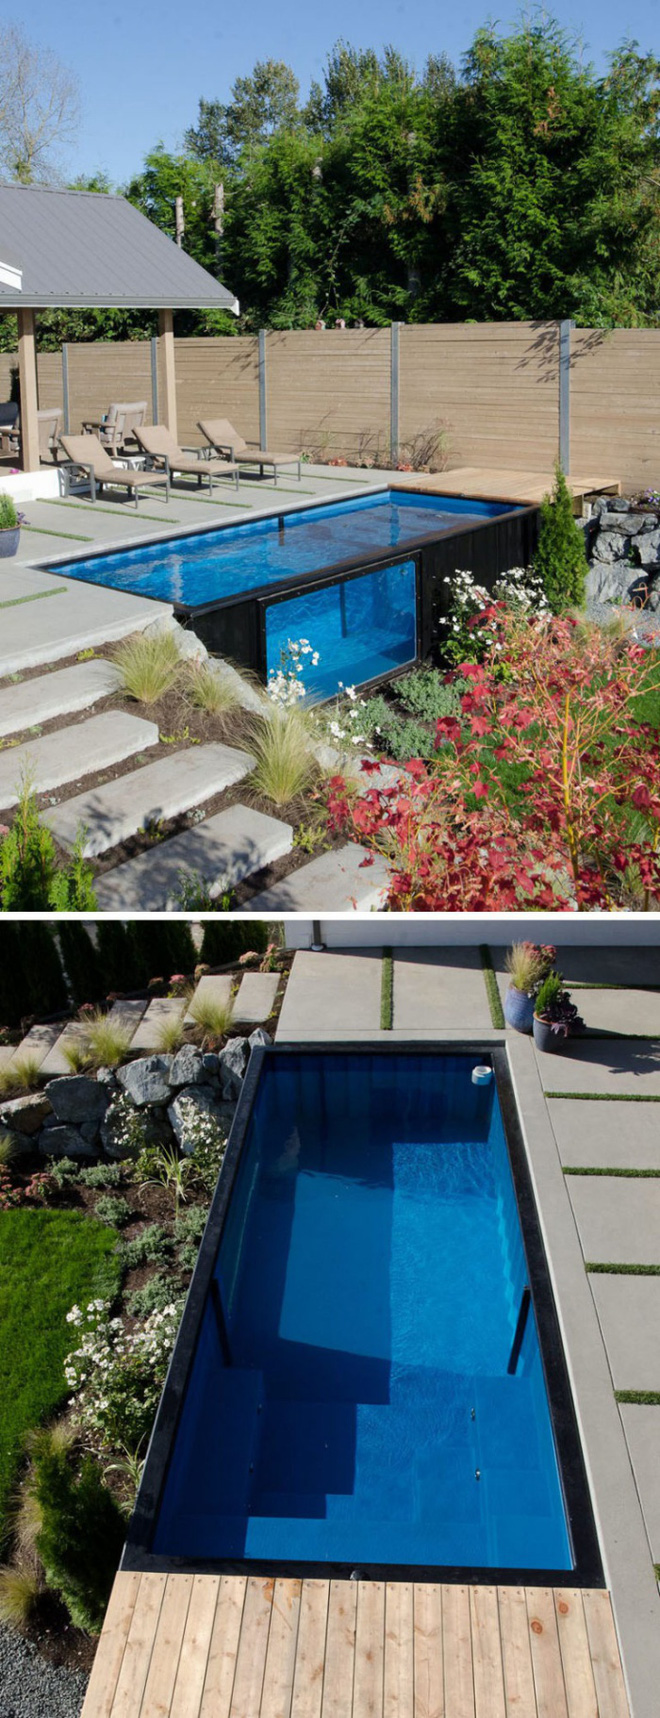 Bể bơi container nhỏ gọn, đẹp tuyệt dành cho nhà có sân vườn nhỏ